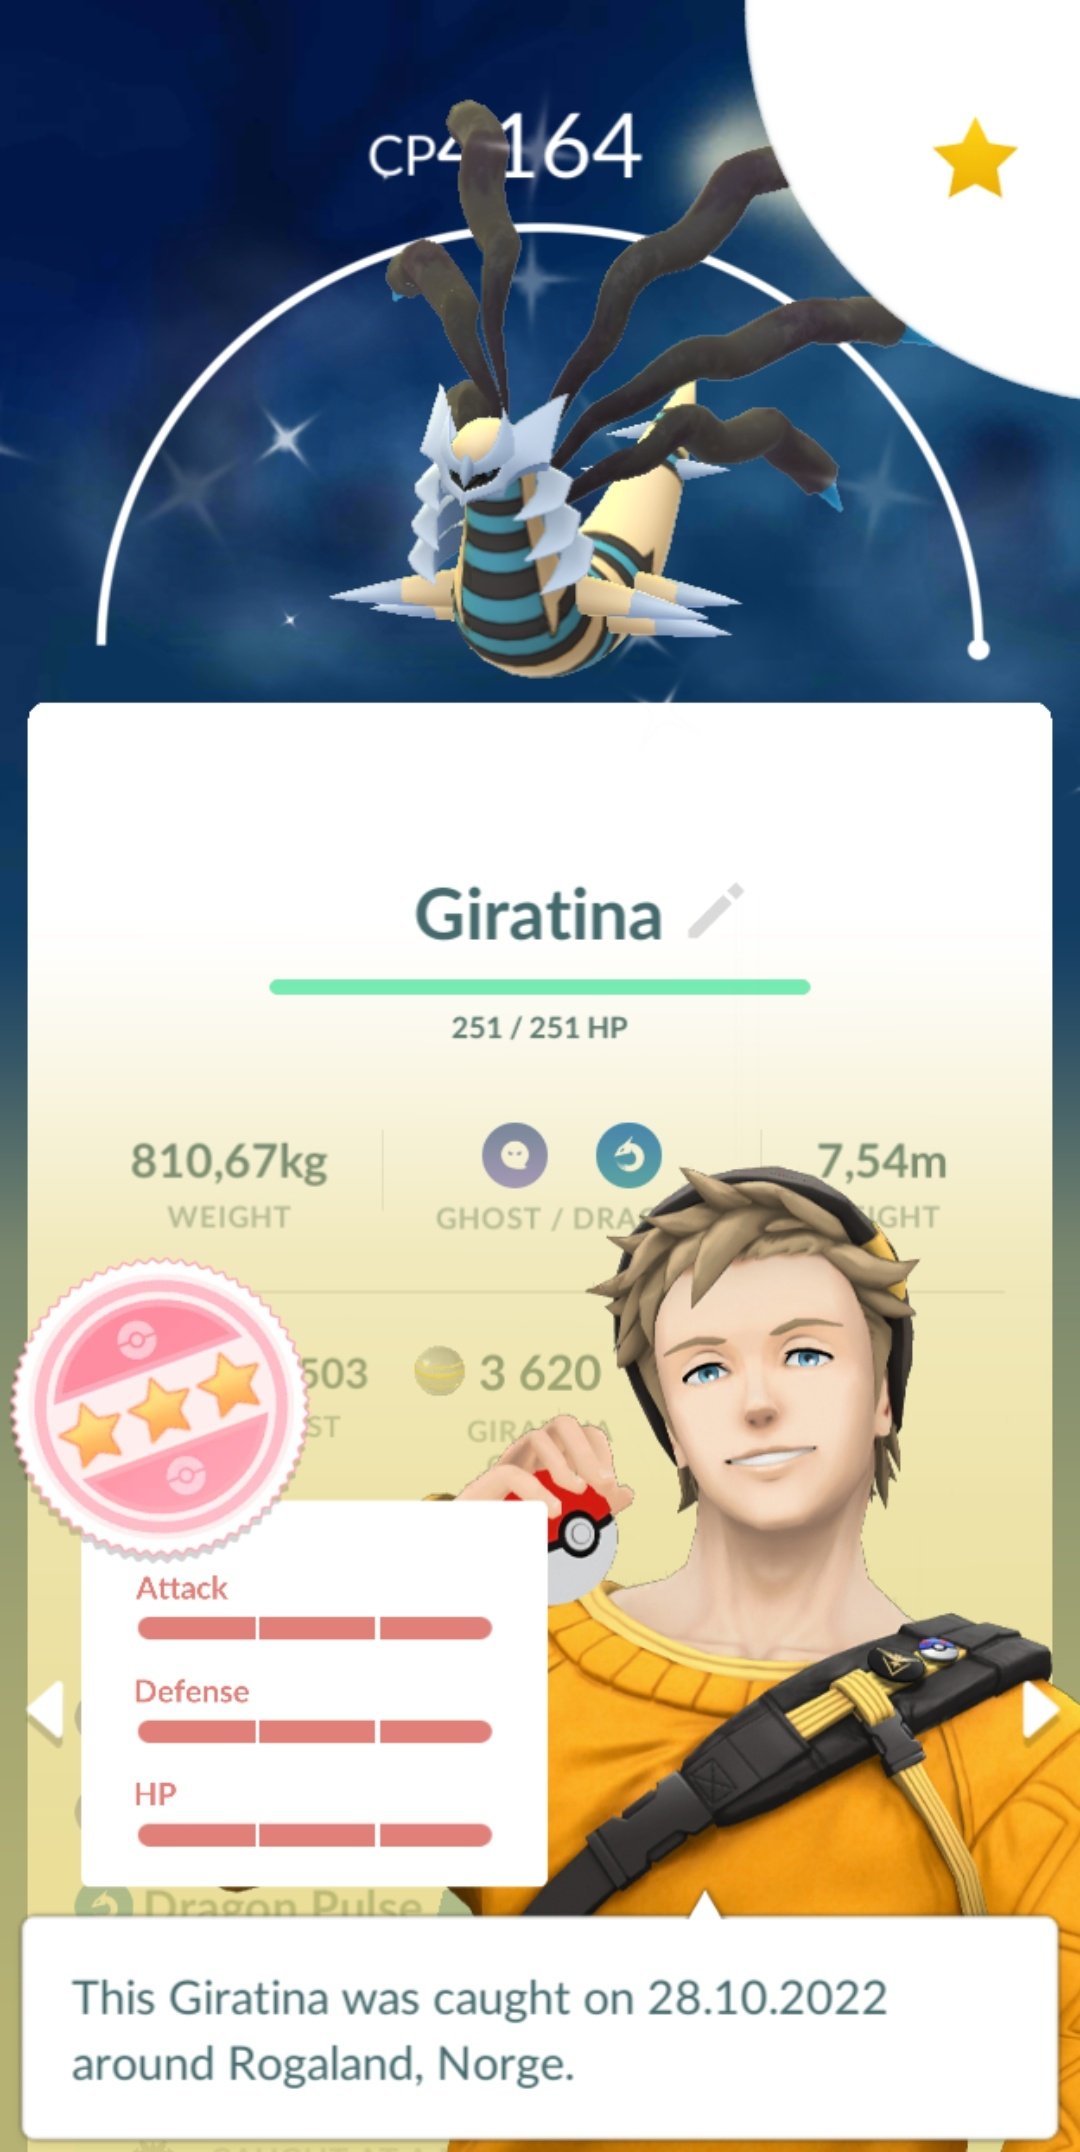 Giratina Origem de volta ao Pokémon GO em novembro de 2022